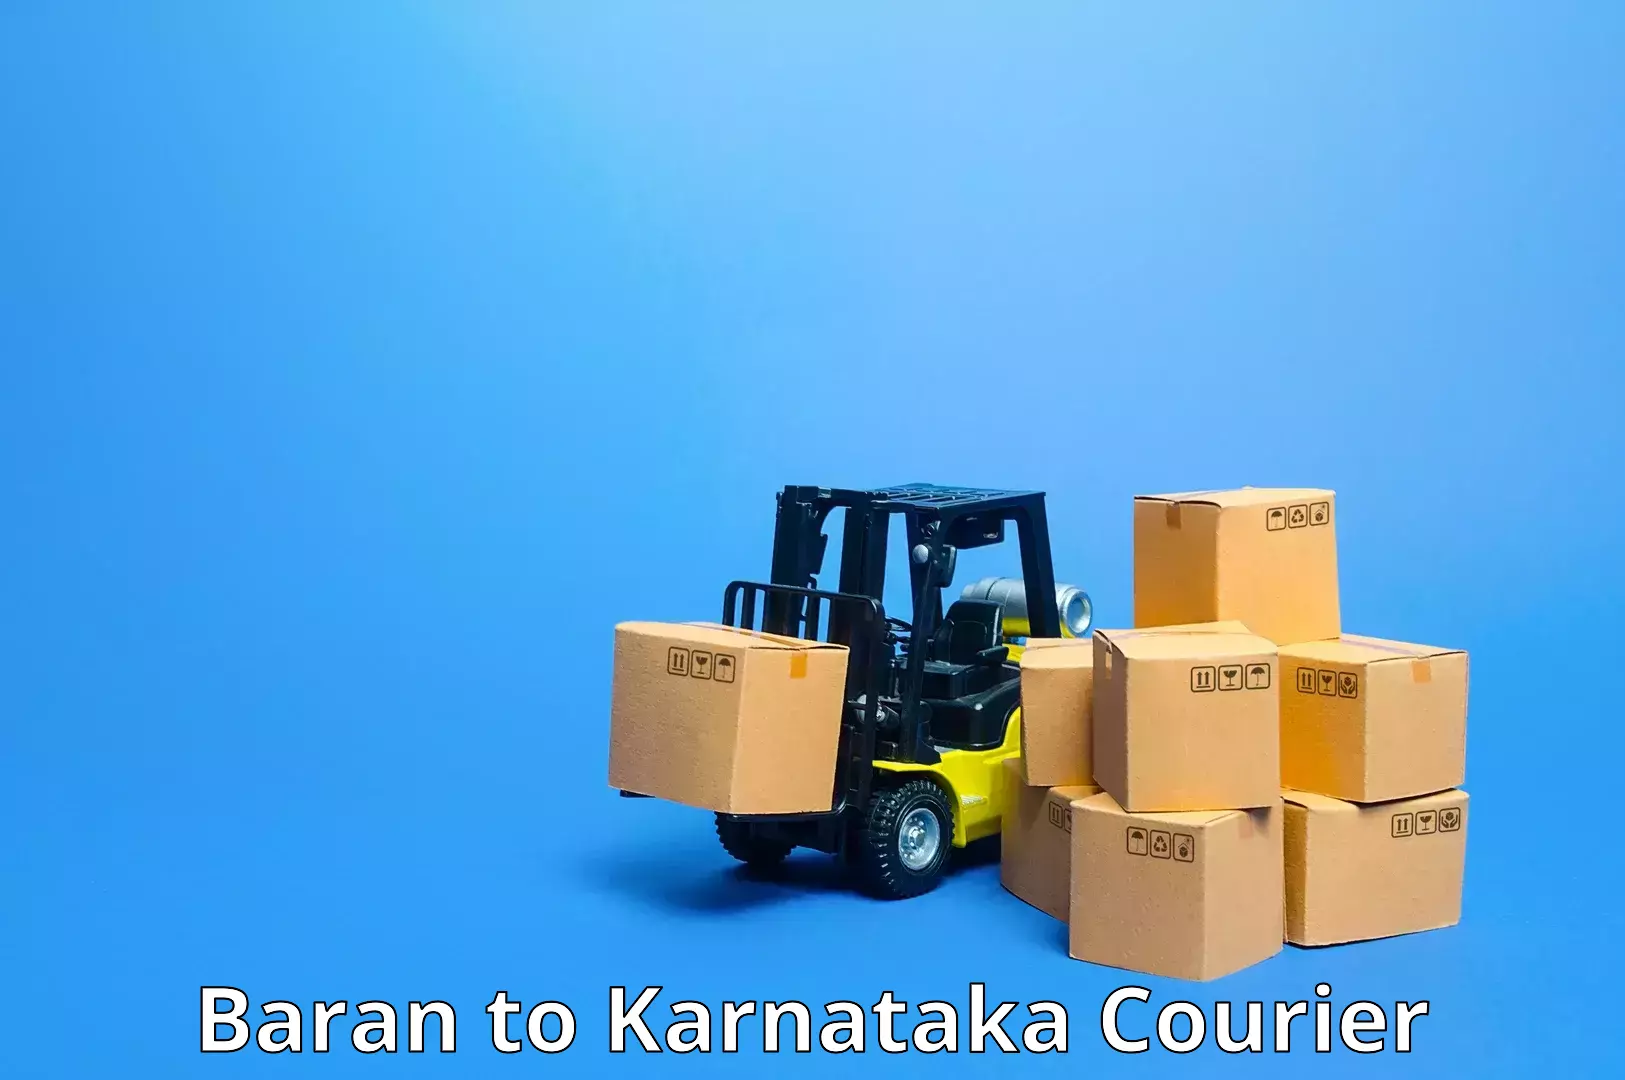 On-call courier service Baran to Saundatti Yallamma